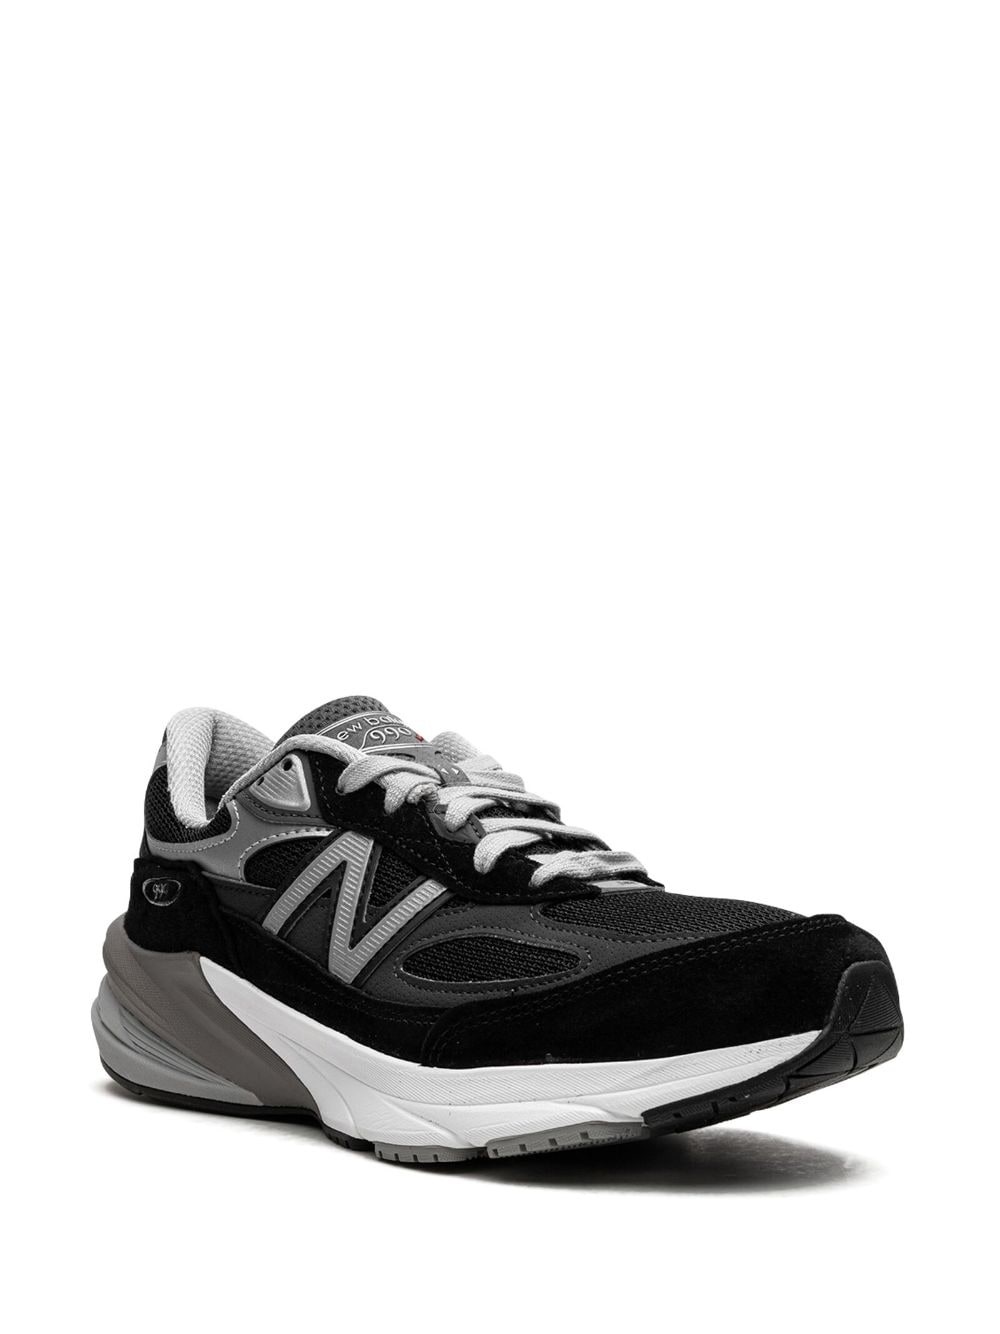 990v6 "Black/Silver" sneakers - 2